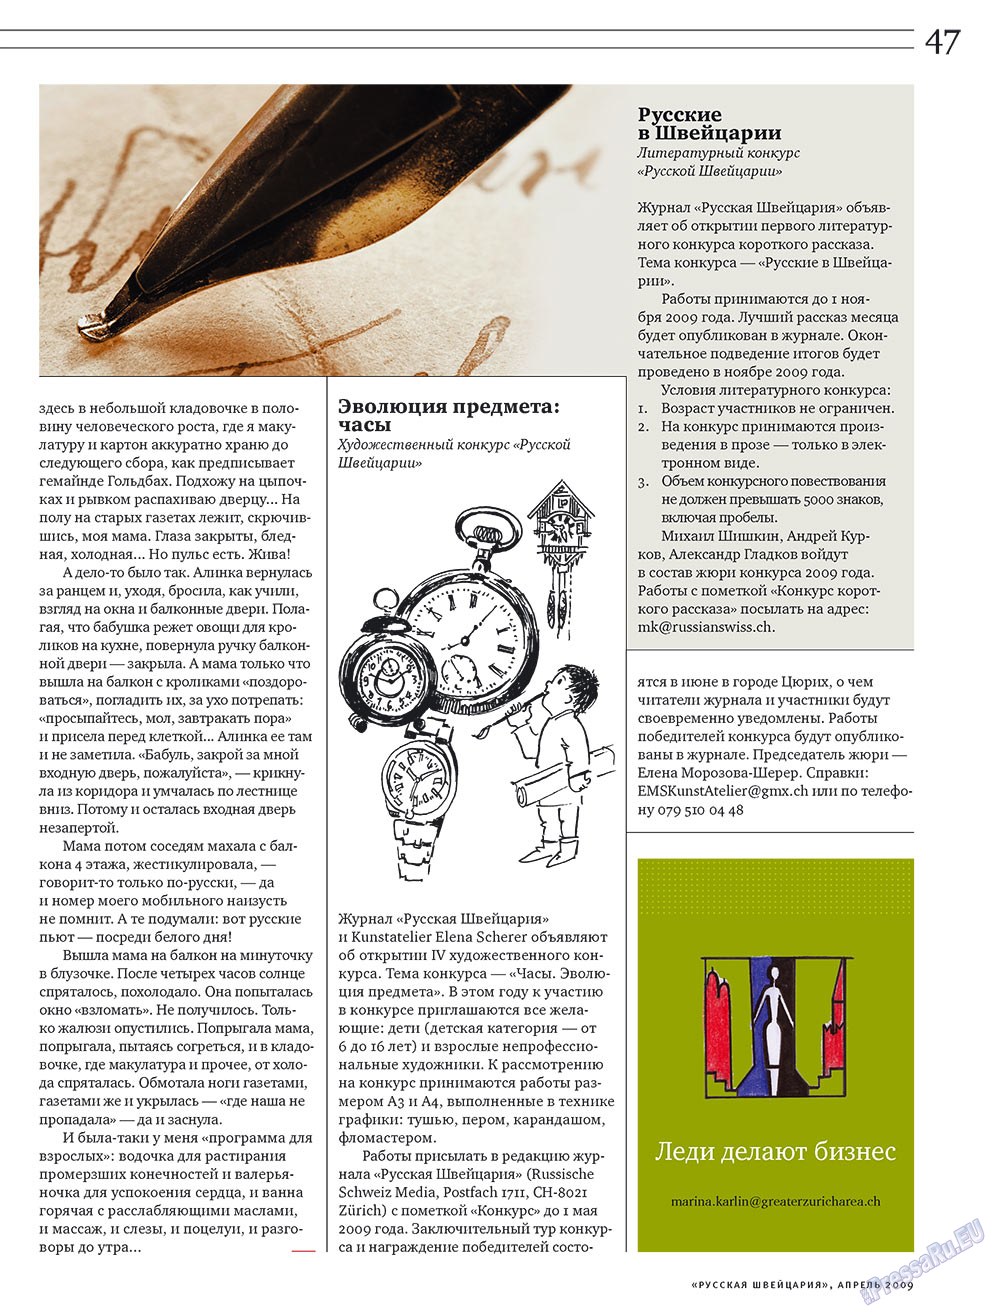 Русская Швейцария, журнал. 2009 №4 стр.47